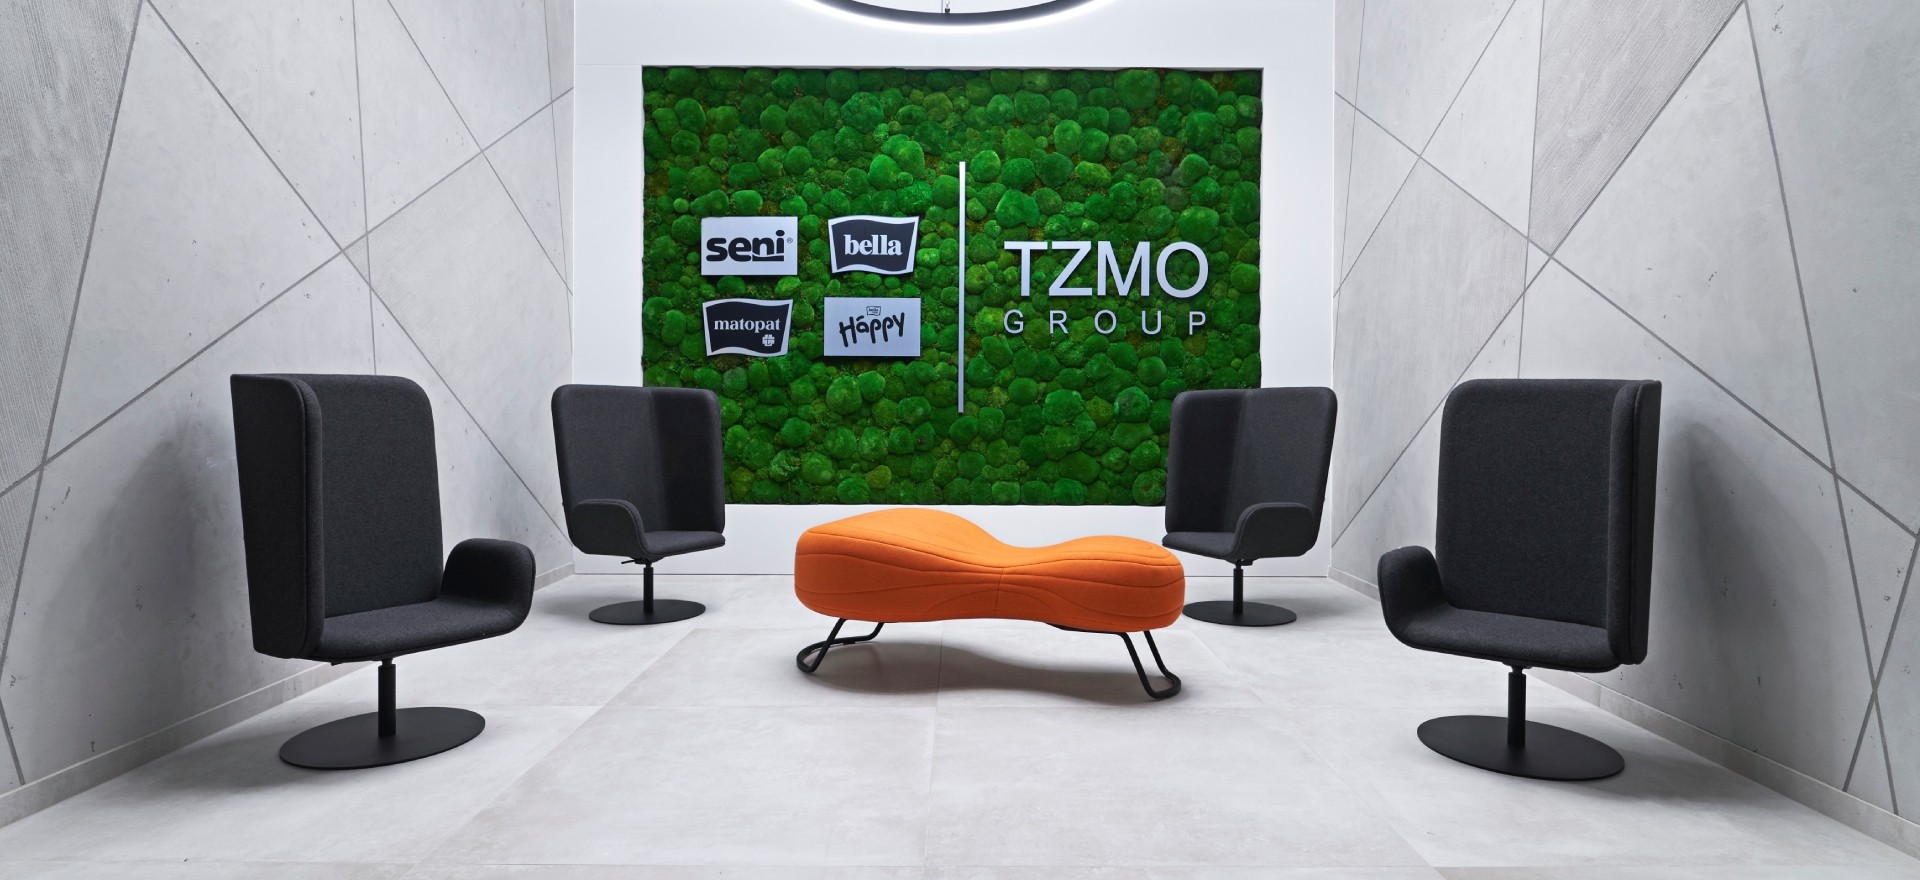 TZMO-Deutschland-GmbH-office5